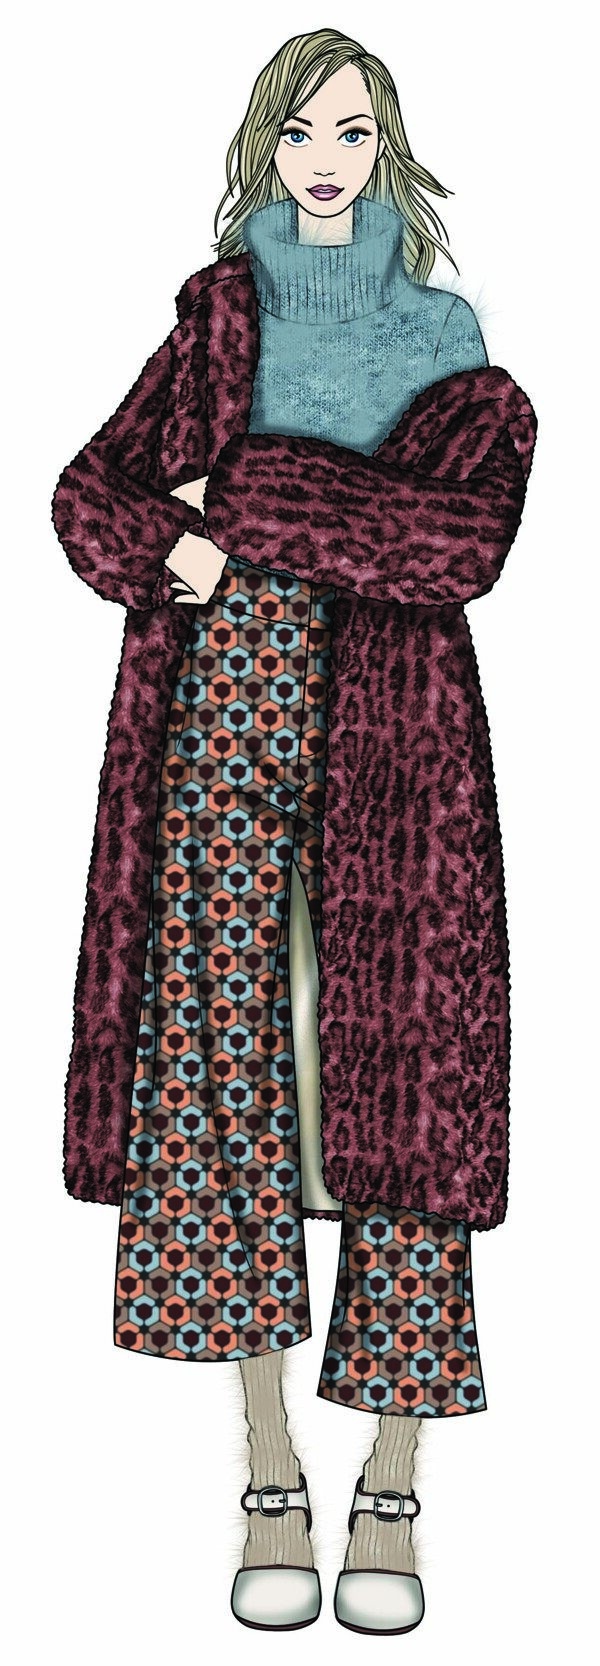 性感红褐色豹纹外套女装服装效果图